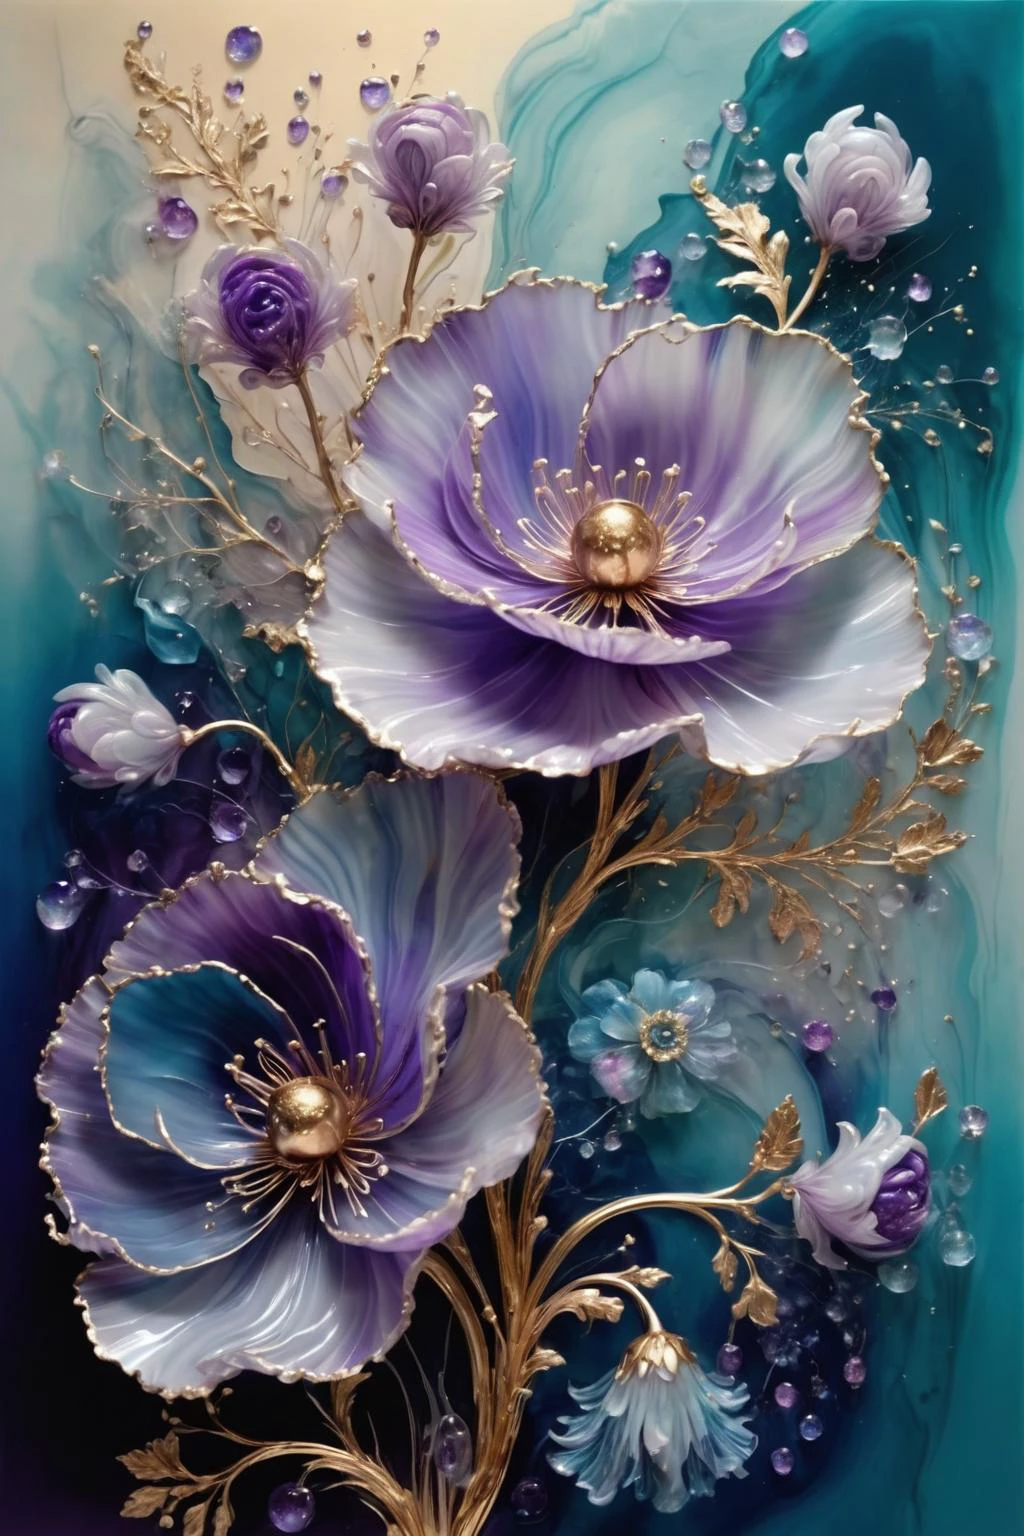 Ein Strauß blühender Blumen,die Blütenblätter zeigen unterschiedliche Blau- und Violetttöne,die Mitte ist mit Goldtextur verziert,funkelnd,elegant und einzigartig,sanft schaukelnd,geheimnisvoll und charmant,realistische und abstrakte Kunst,Einzelheiten,sehr realistisch,schön und vital,traumhaft und surreal,zarte Pinselstriche und satte Farben,Schönheit und Mysterium,unvorstellbare Schönheit,Verziert und kompliziert,transparent,durchscheinend,Achatmaterial,jade stoff,BY Anne Bachelier,